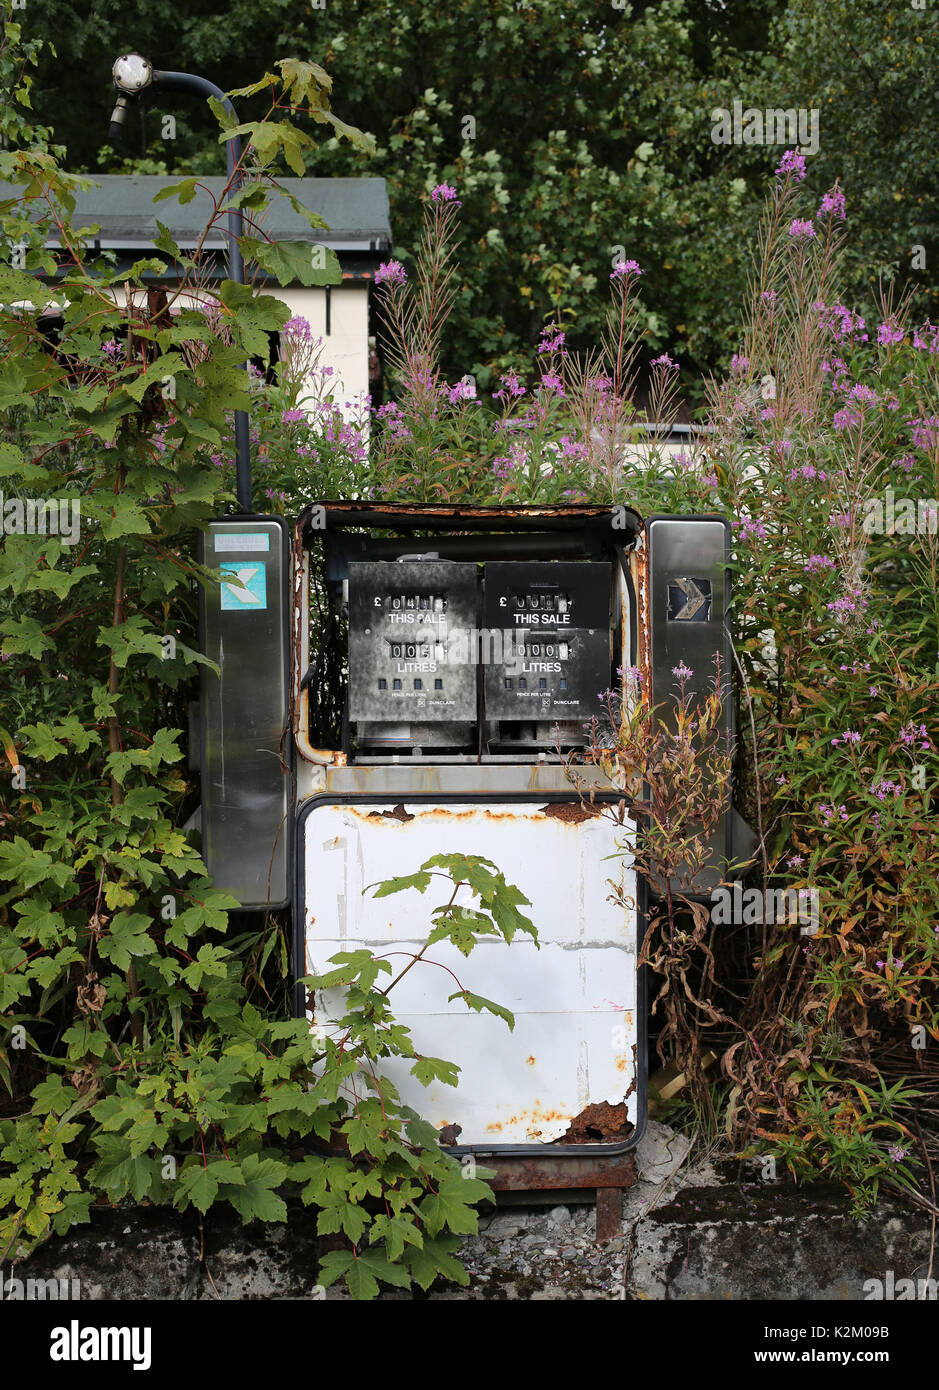 Pompes à carburant abandonnés en milieu rural Scotland UK Crédit : AllanMilligan/Alamy Banque D'Images